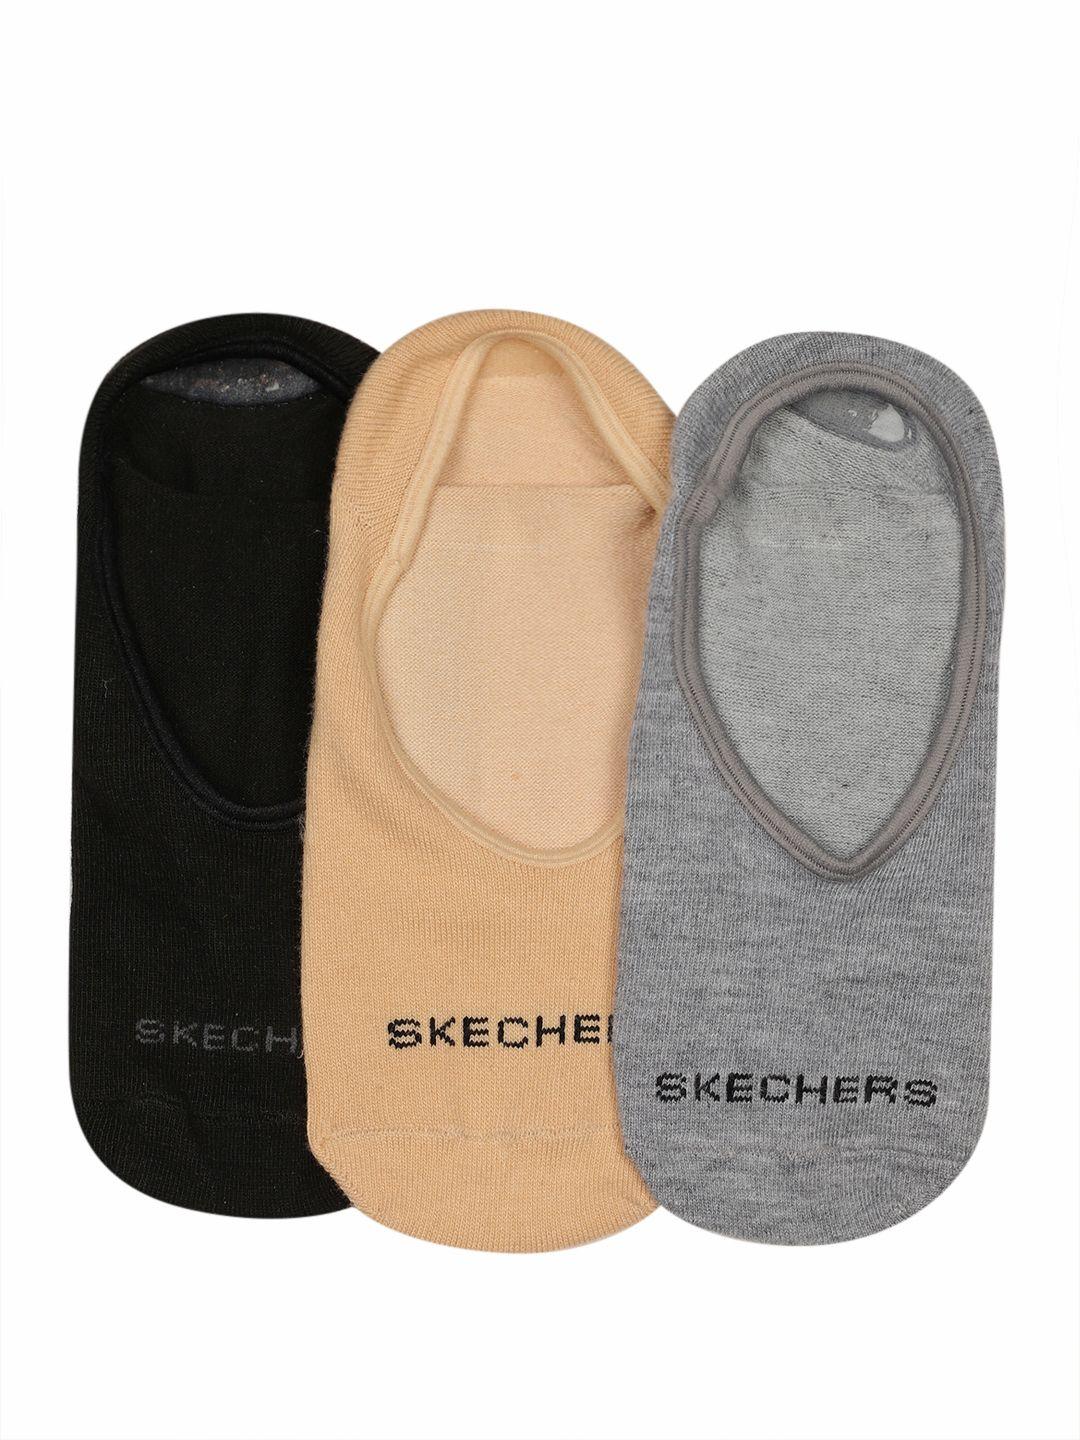 skechers-women-pack-of-3-brand-logo-woven-design-shoe-liner-socks